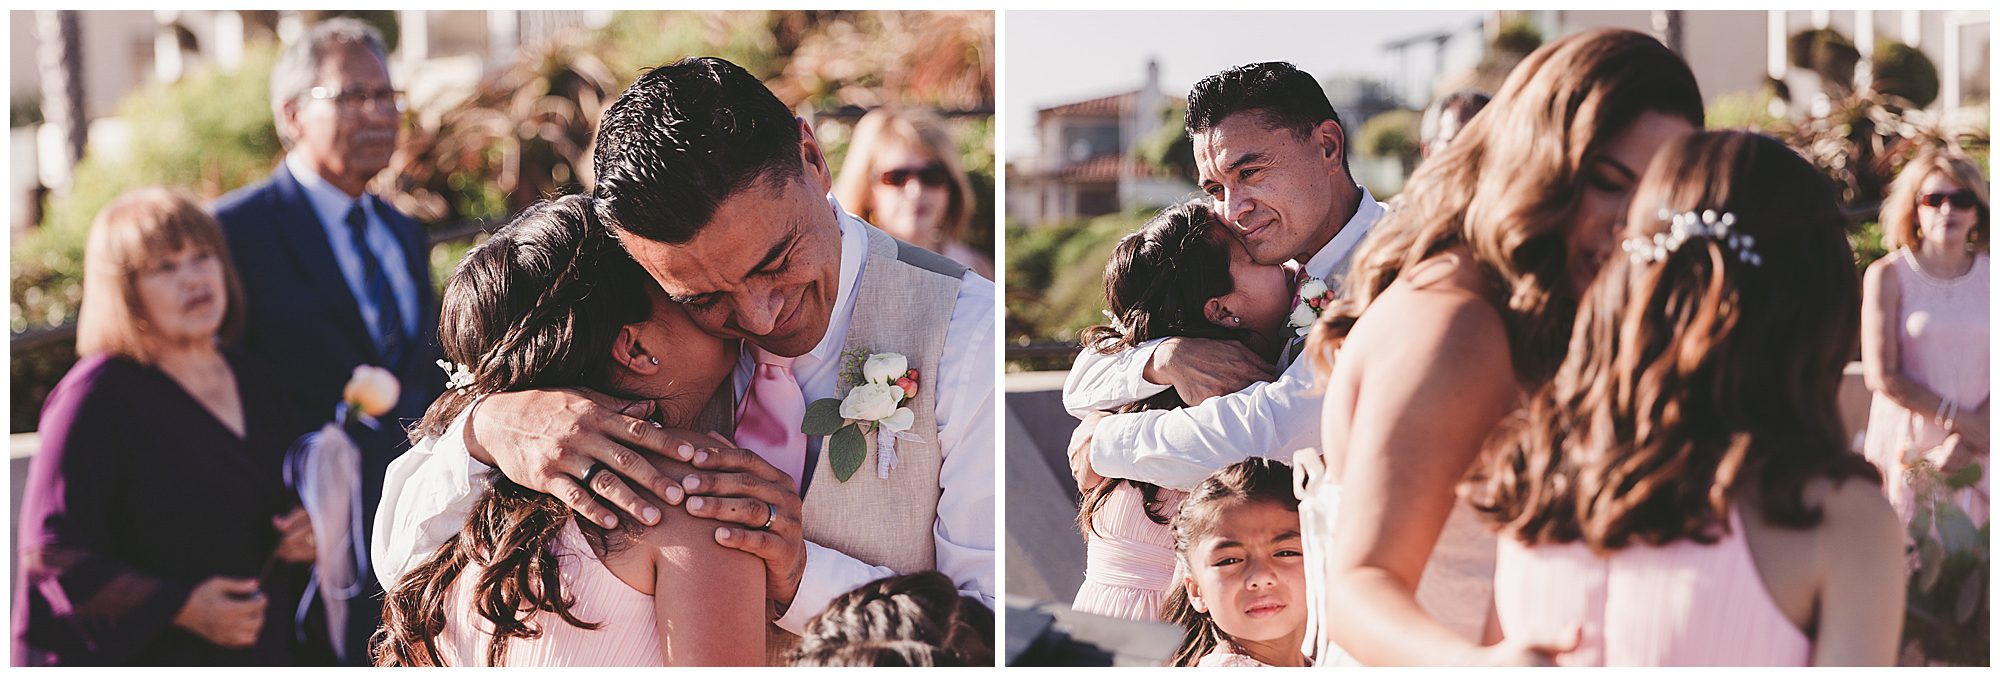 Laguna Beach Crescent Bay Point Park wedding family photos